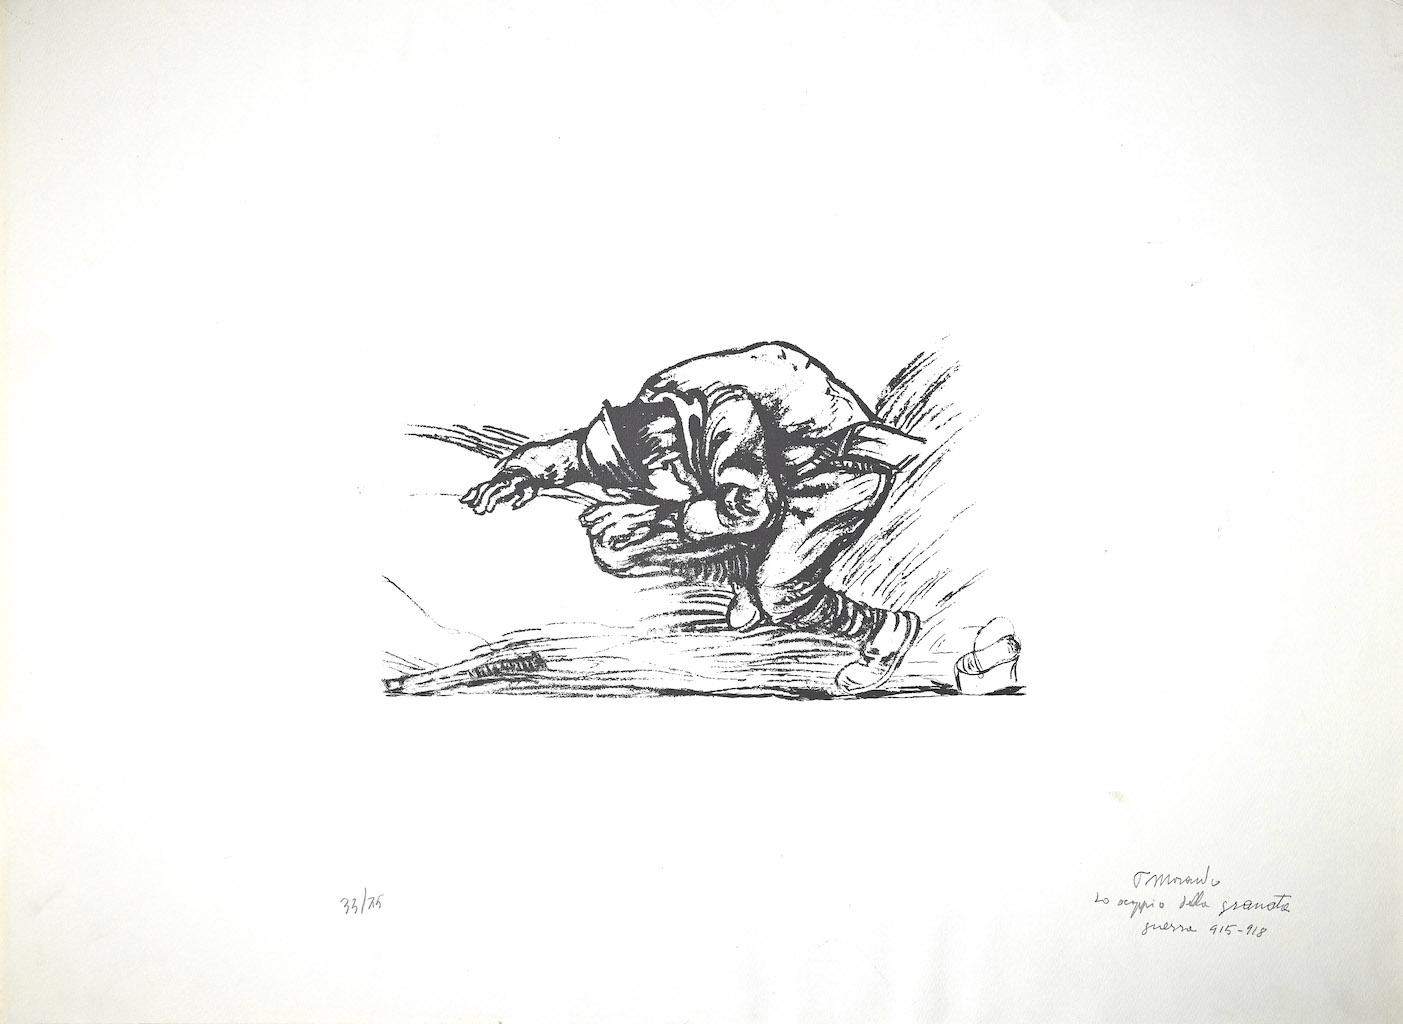 Pietro Morando Figurative Print - The Explosion of the Grenade -  Lithograph by P. Morando - 1950s